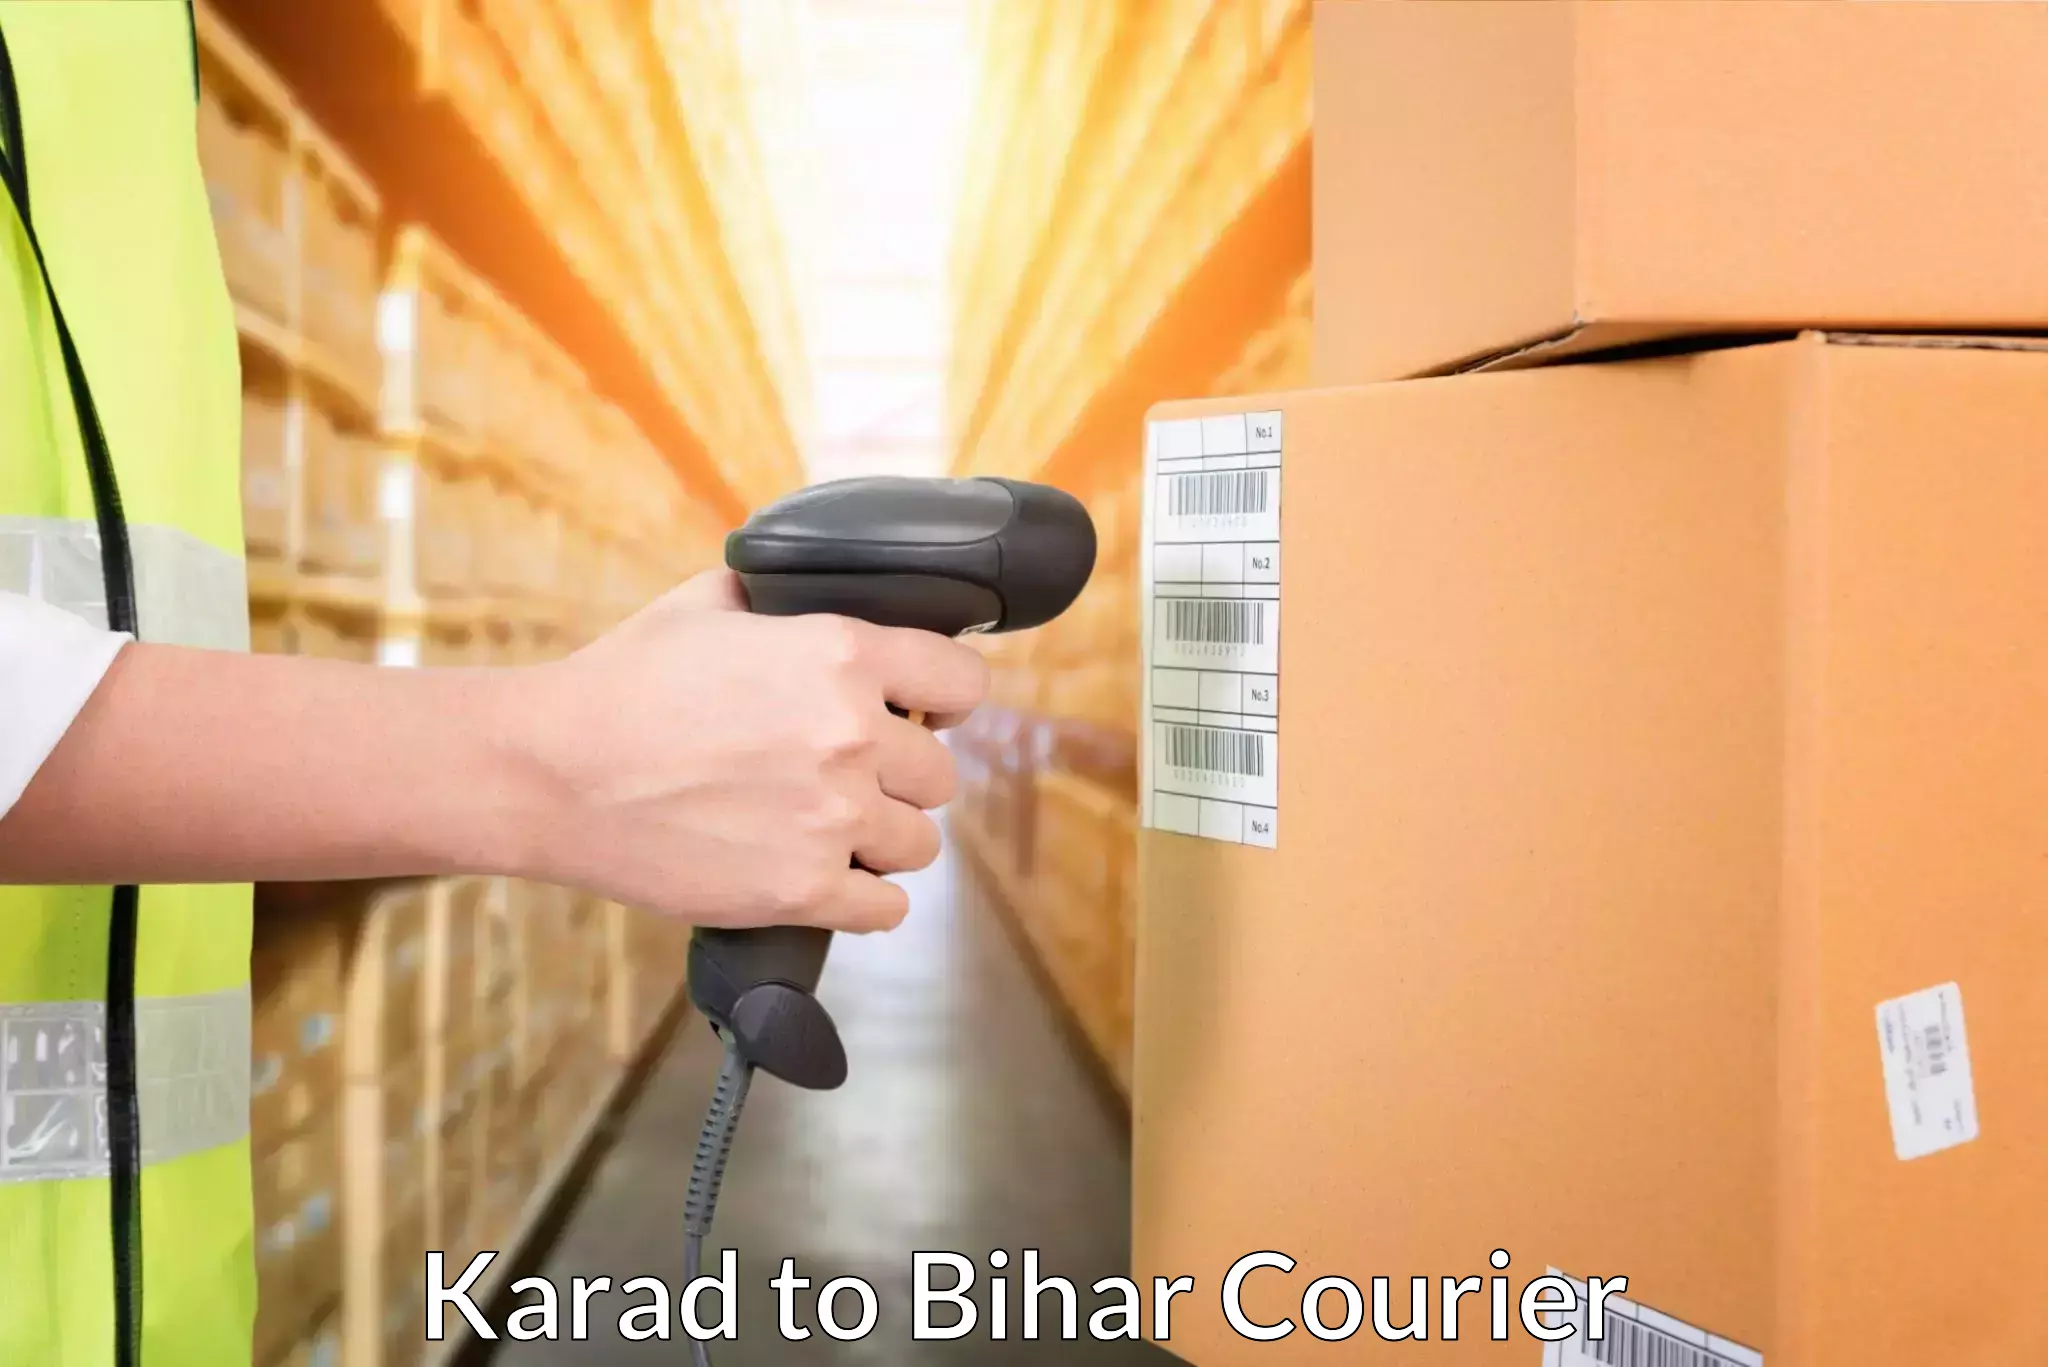 Courier service comparison Karad to Mojharia